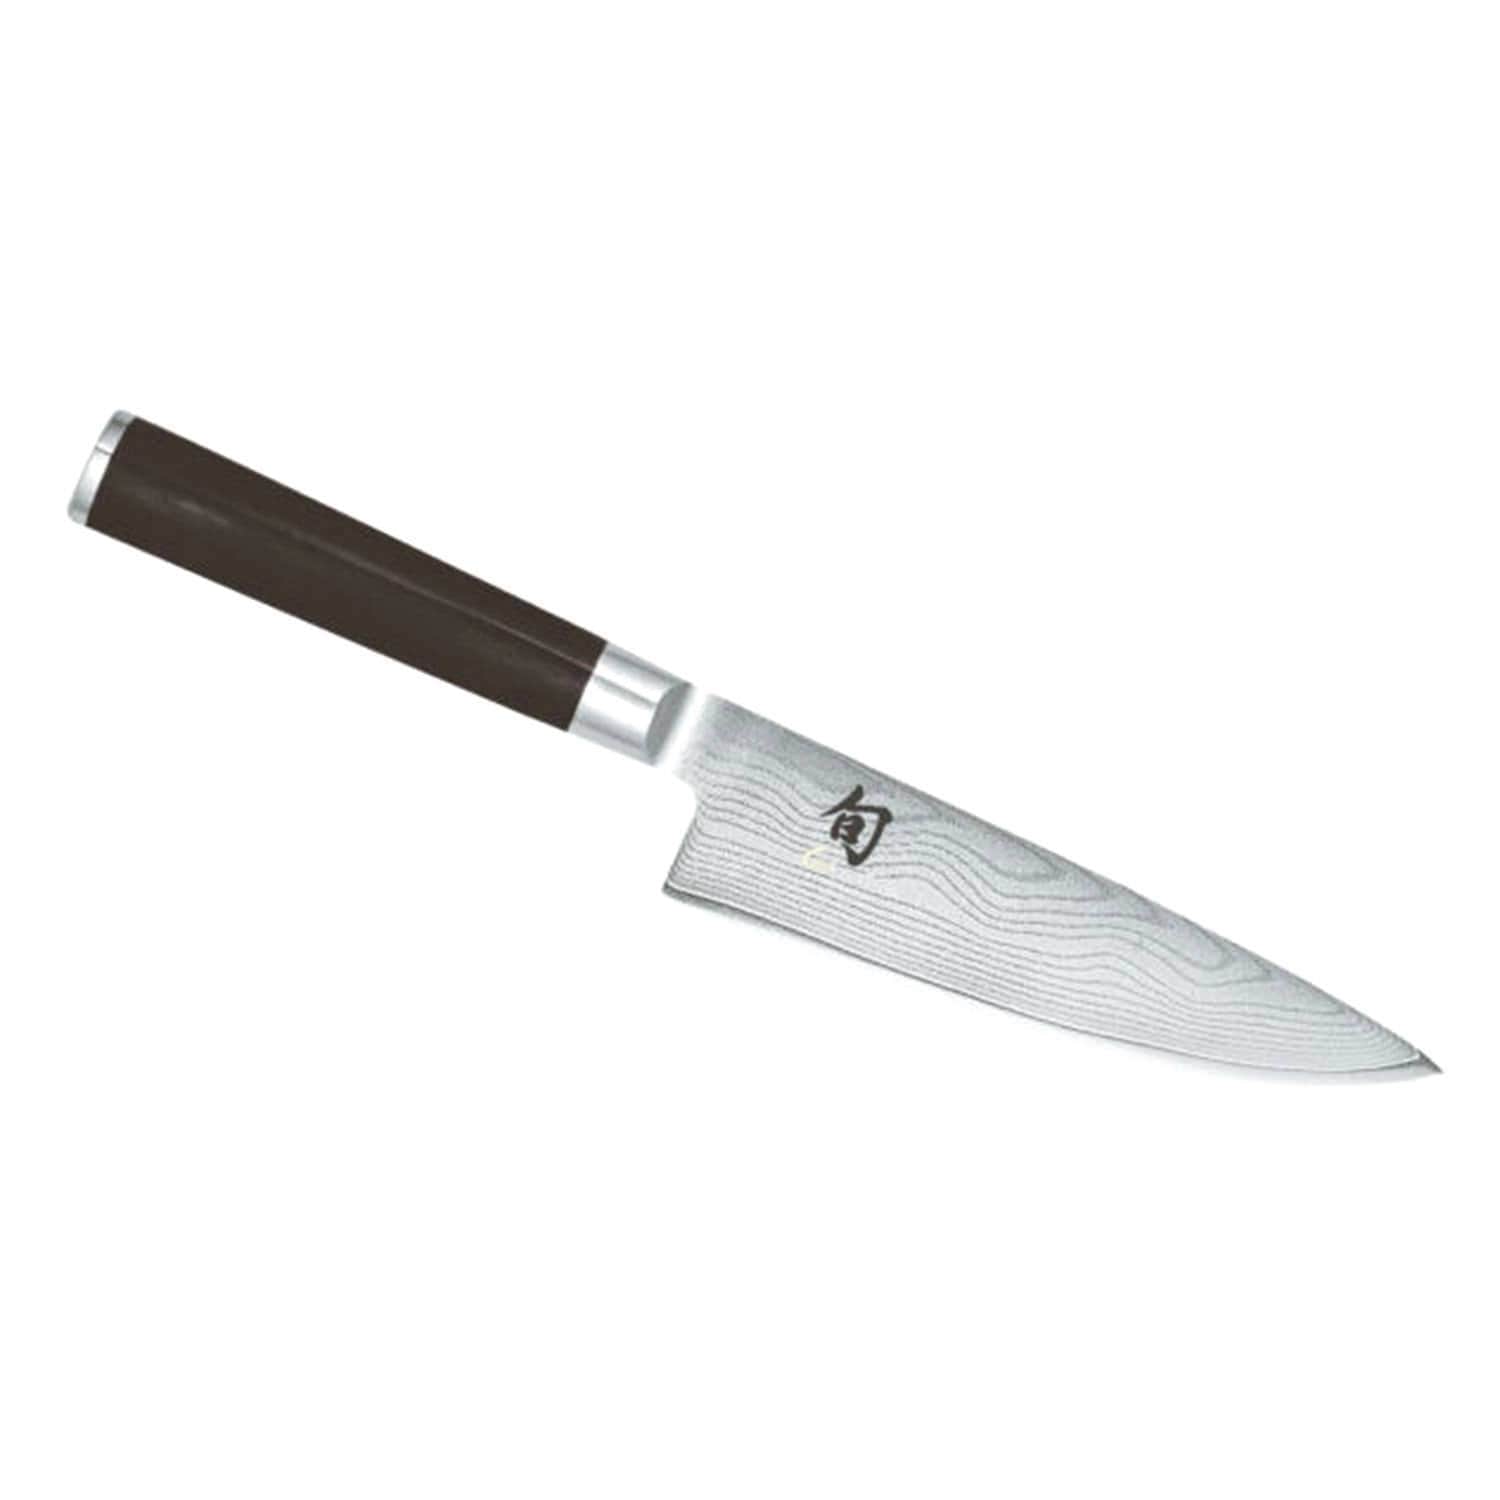 كاي شون 6 الشيف سكين - أسود، 15 سم - DM-0723 - Jashanmal الرئيسية